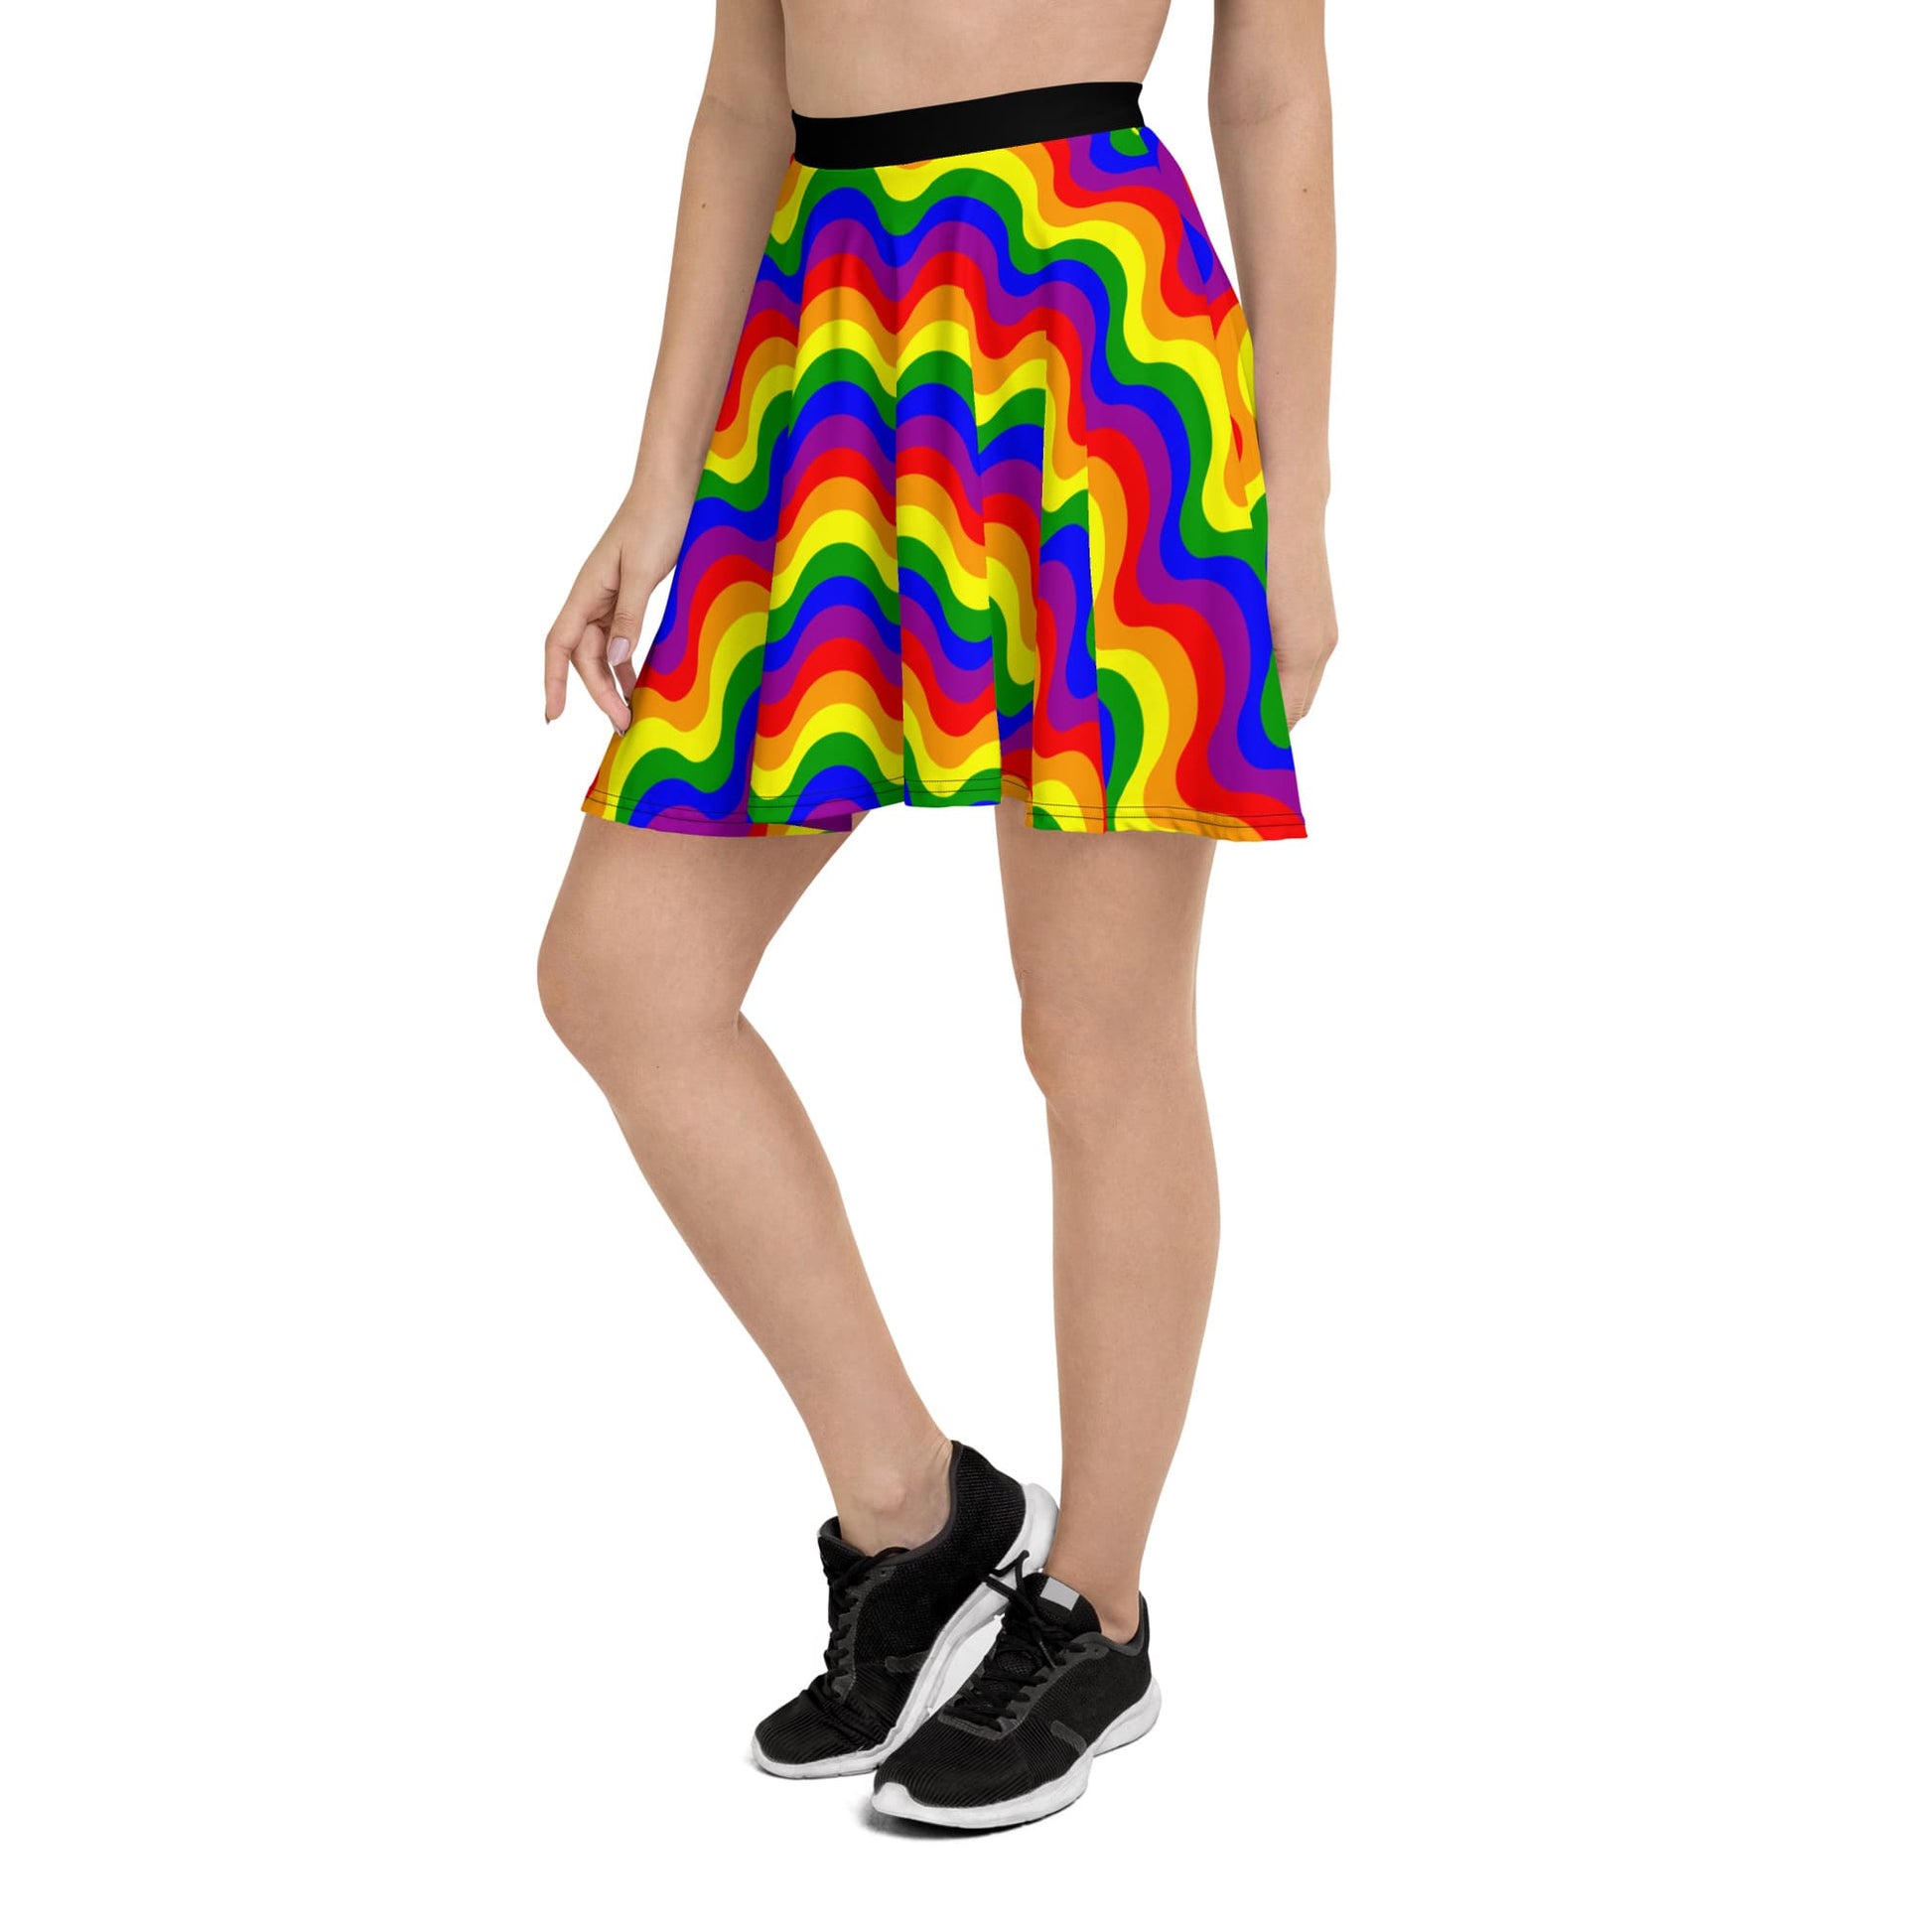 LGBT pride skirt, left